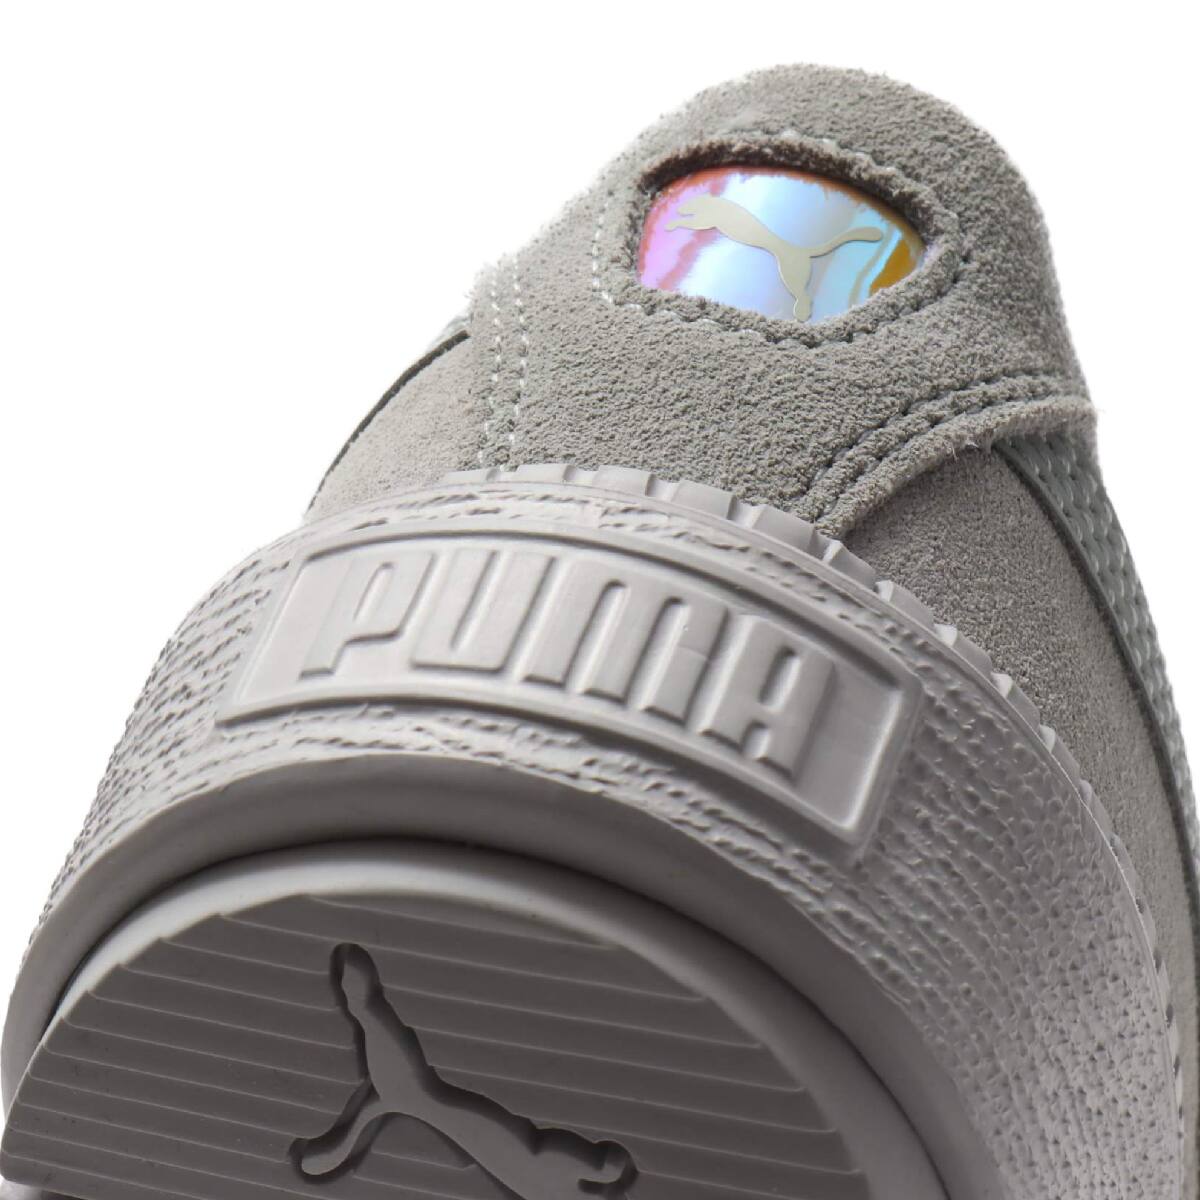 puma high platform shoes